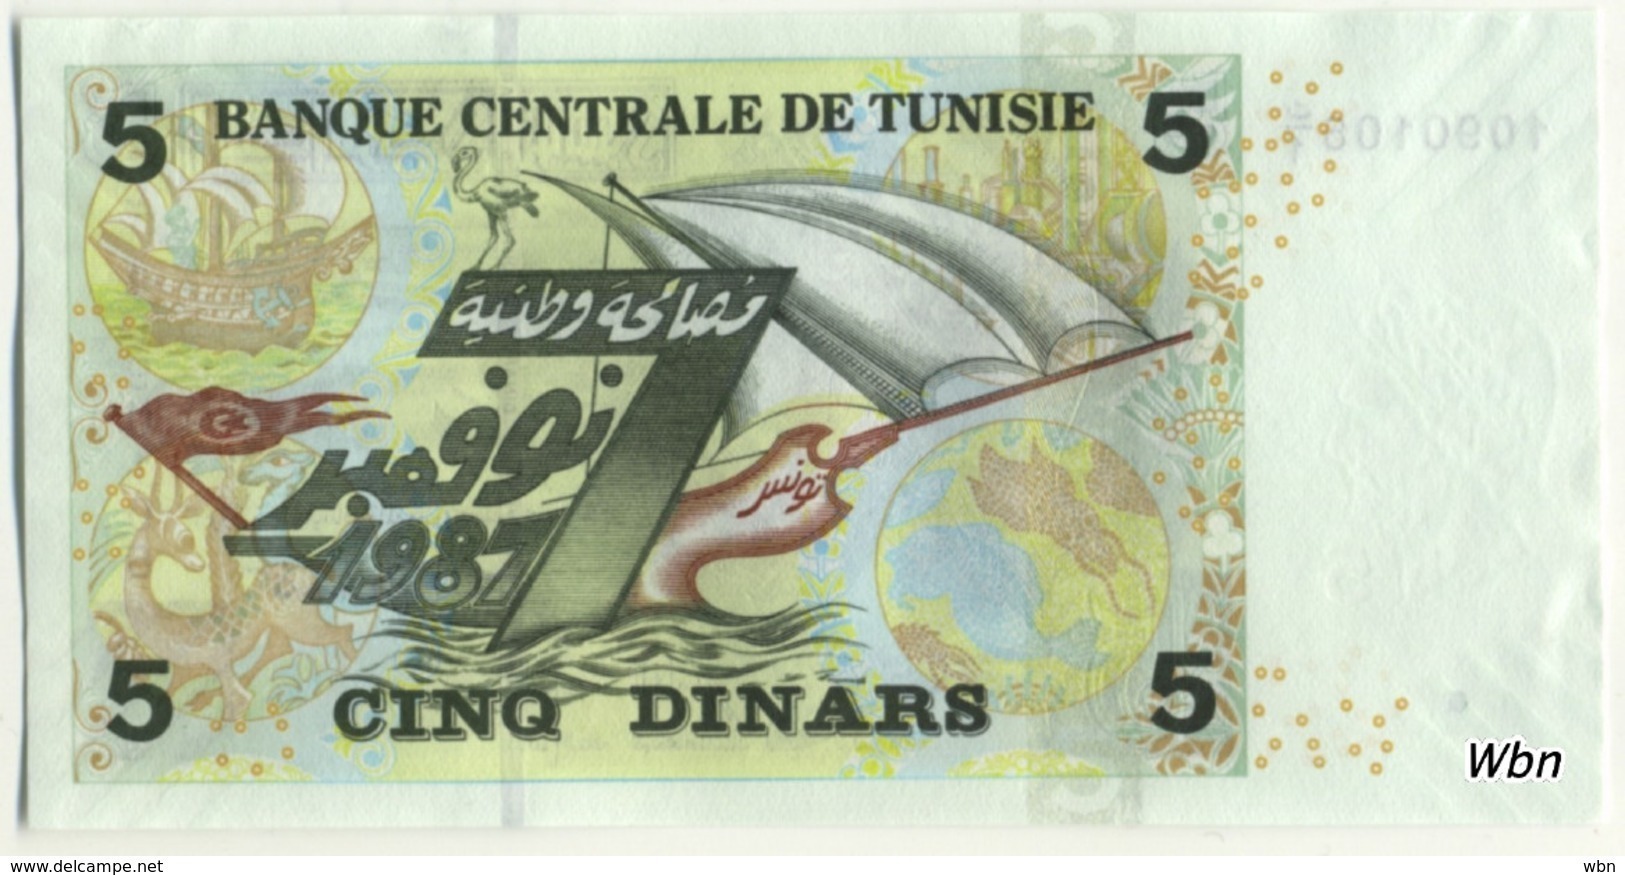 Tunisie 5 Dinars (P92) 2008 (Pref: C/1) -UNC- - Tunisia